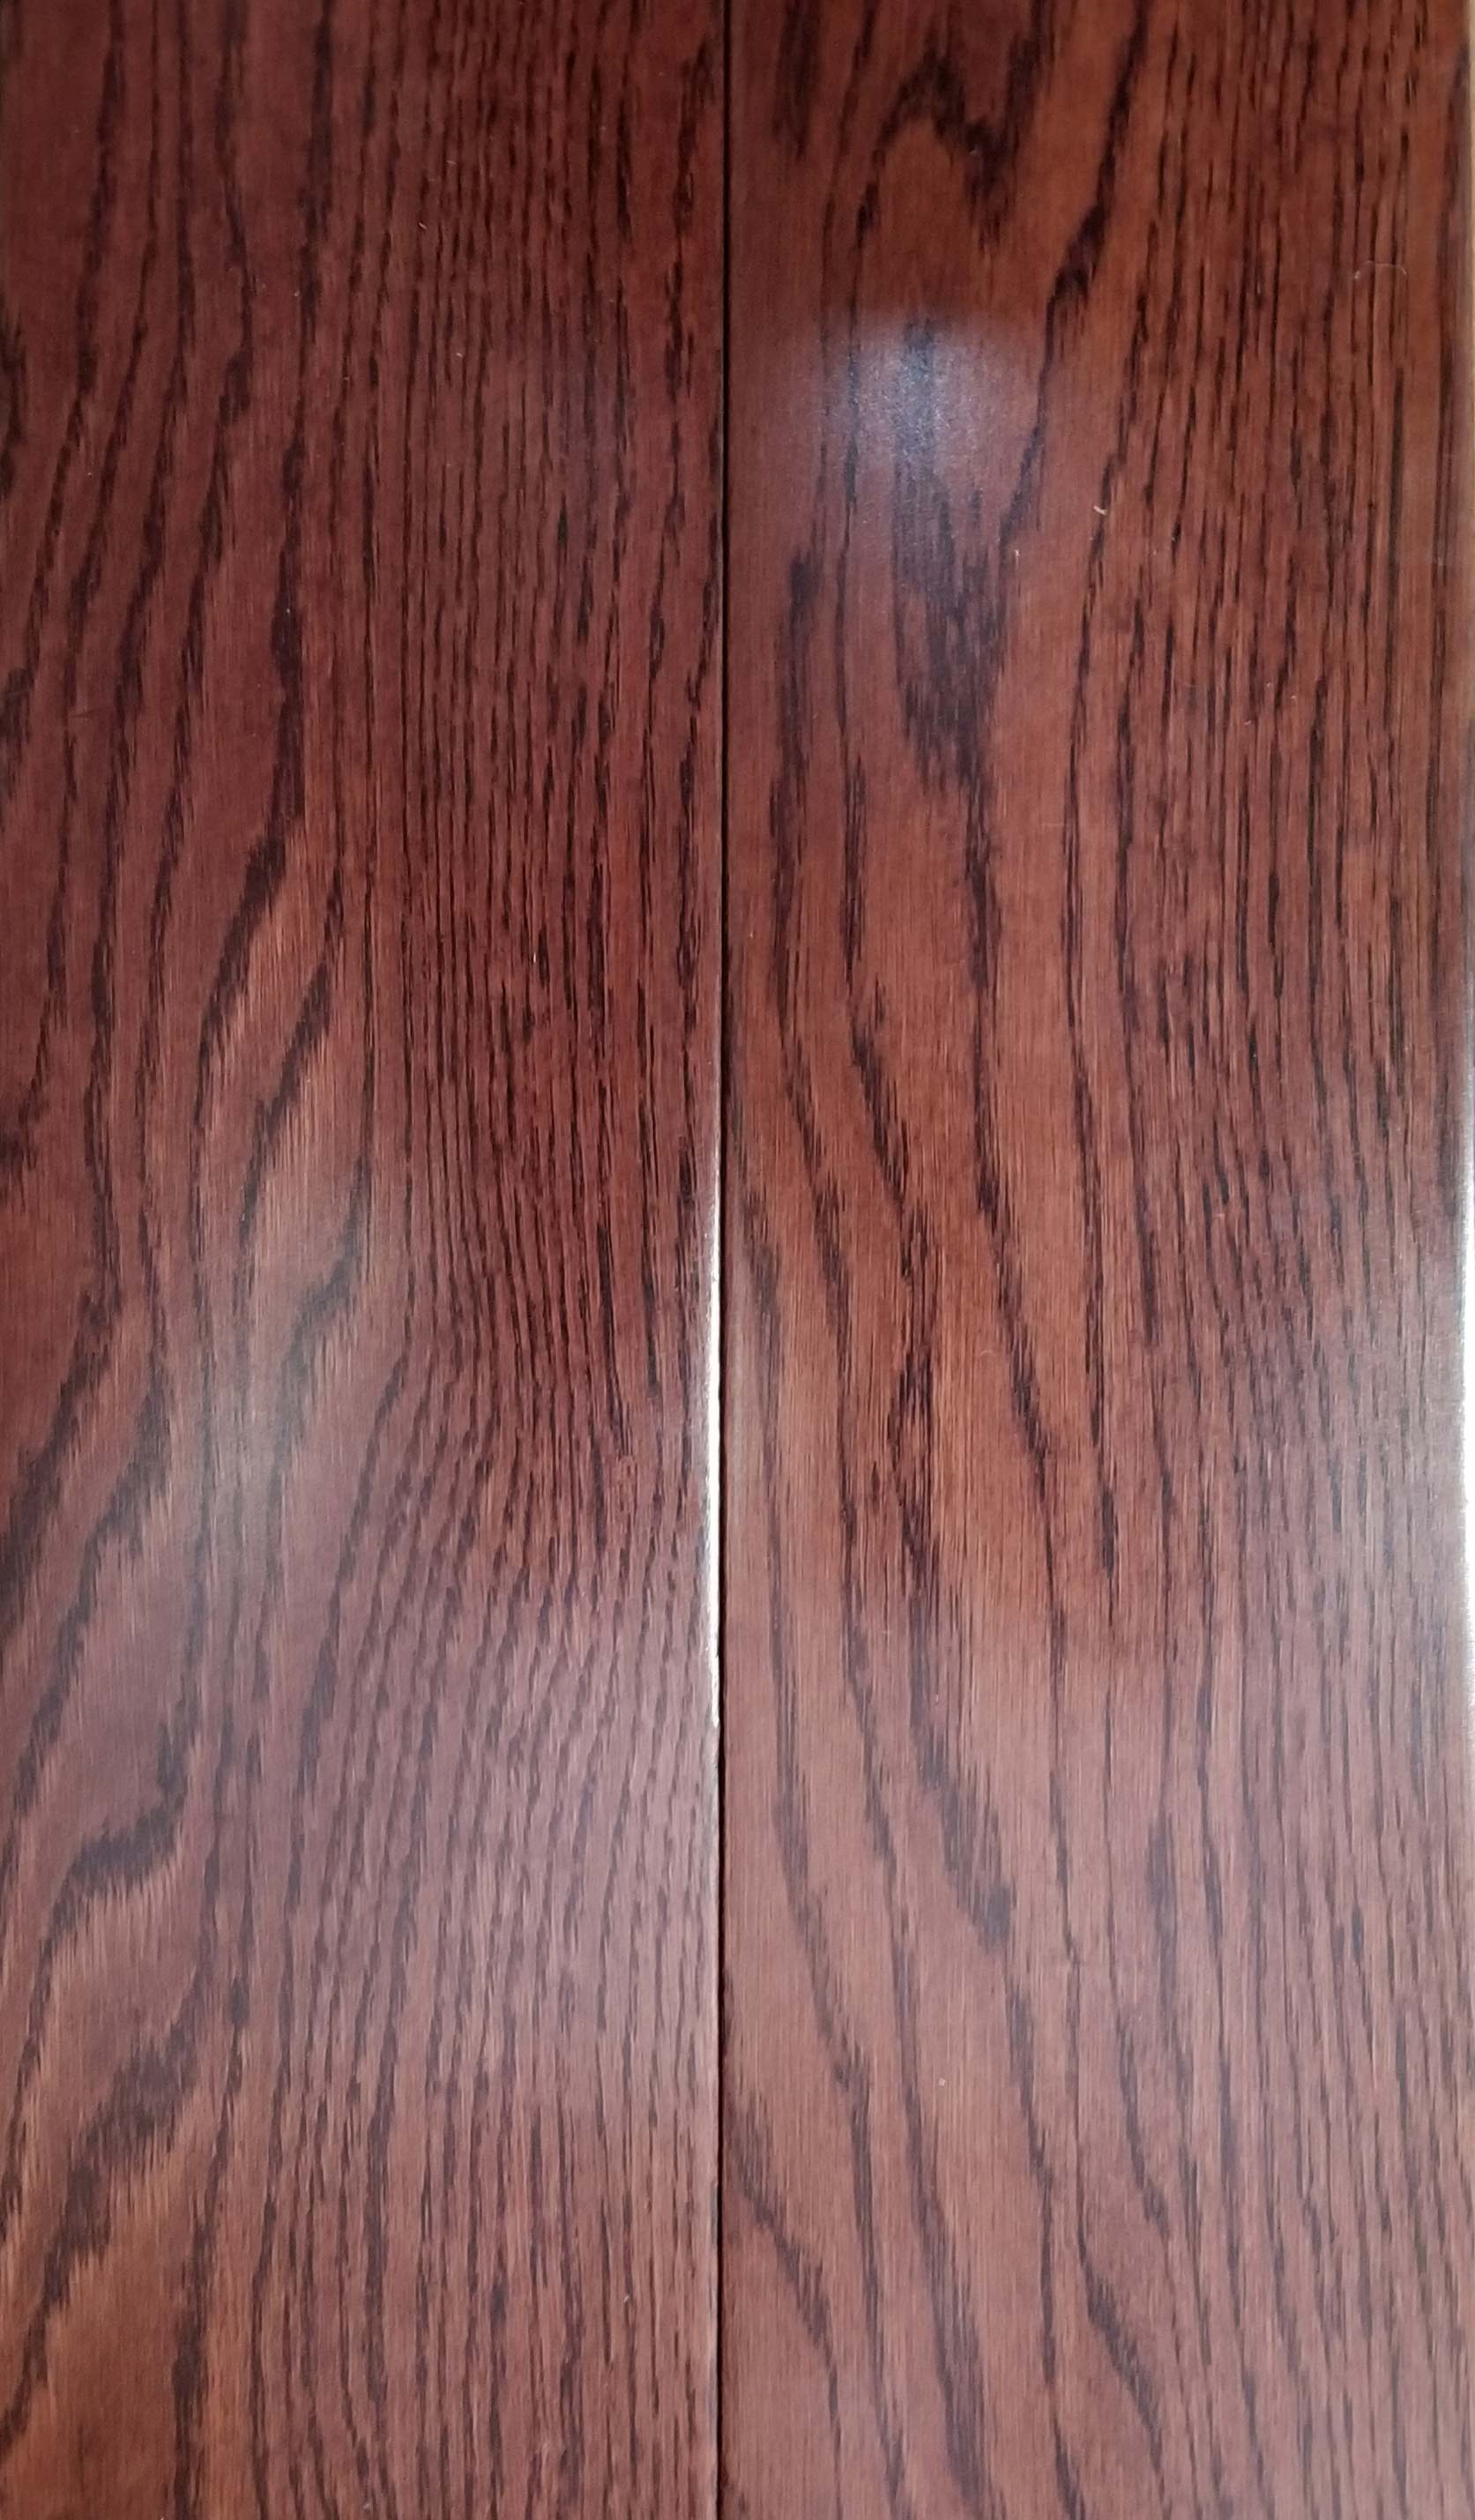 Wood Look Vinyl Plank and Crema Marfil — Hardwood Floor With SKU Number DH305 in Saint Petersburg, FL